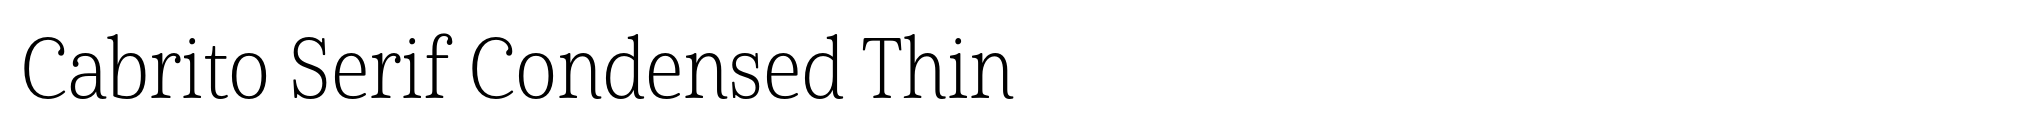 Cabrito Serif Condensed Thin image